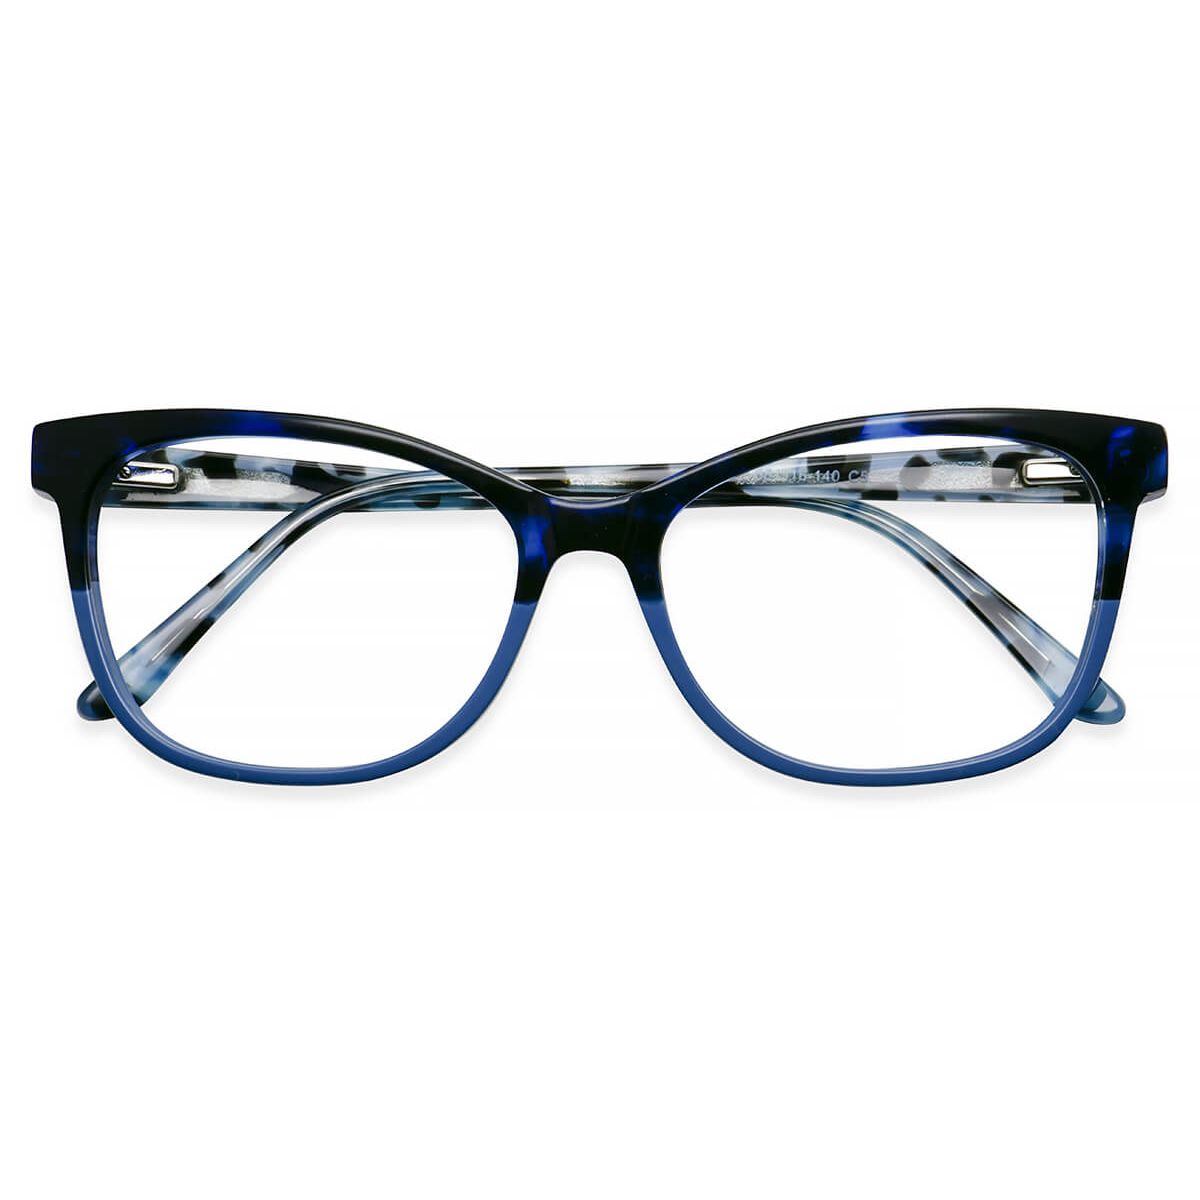 W1002 Oval Floral Eyeglasses Frames Leoptique